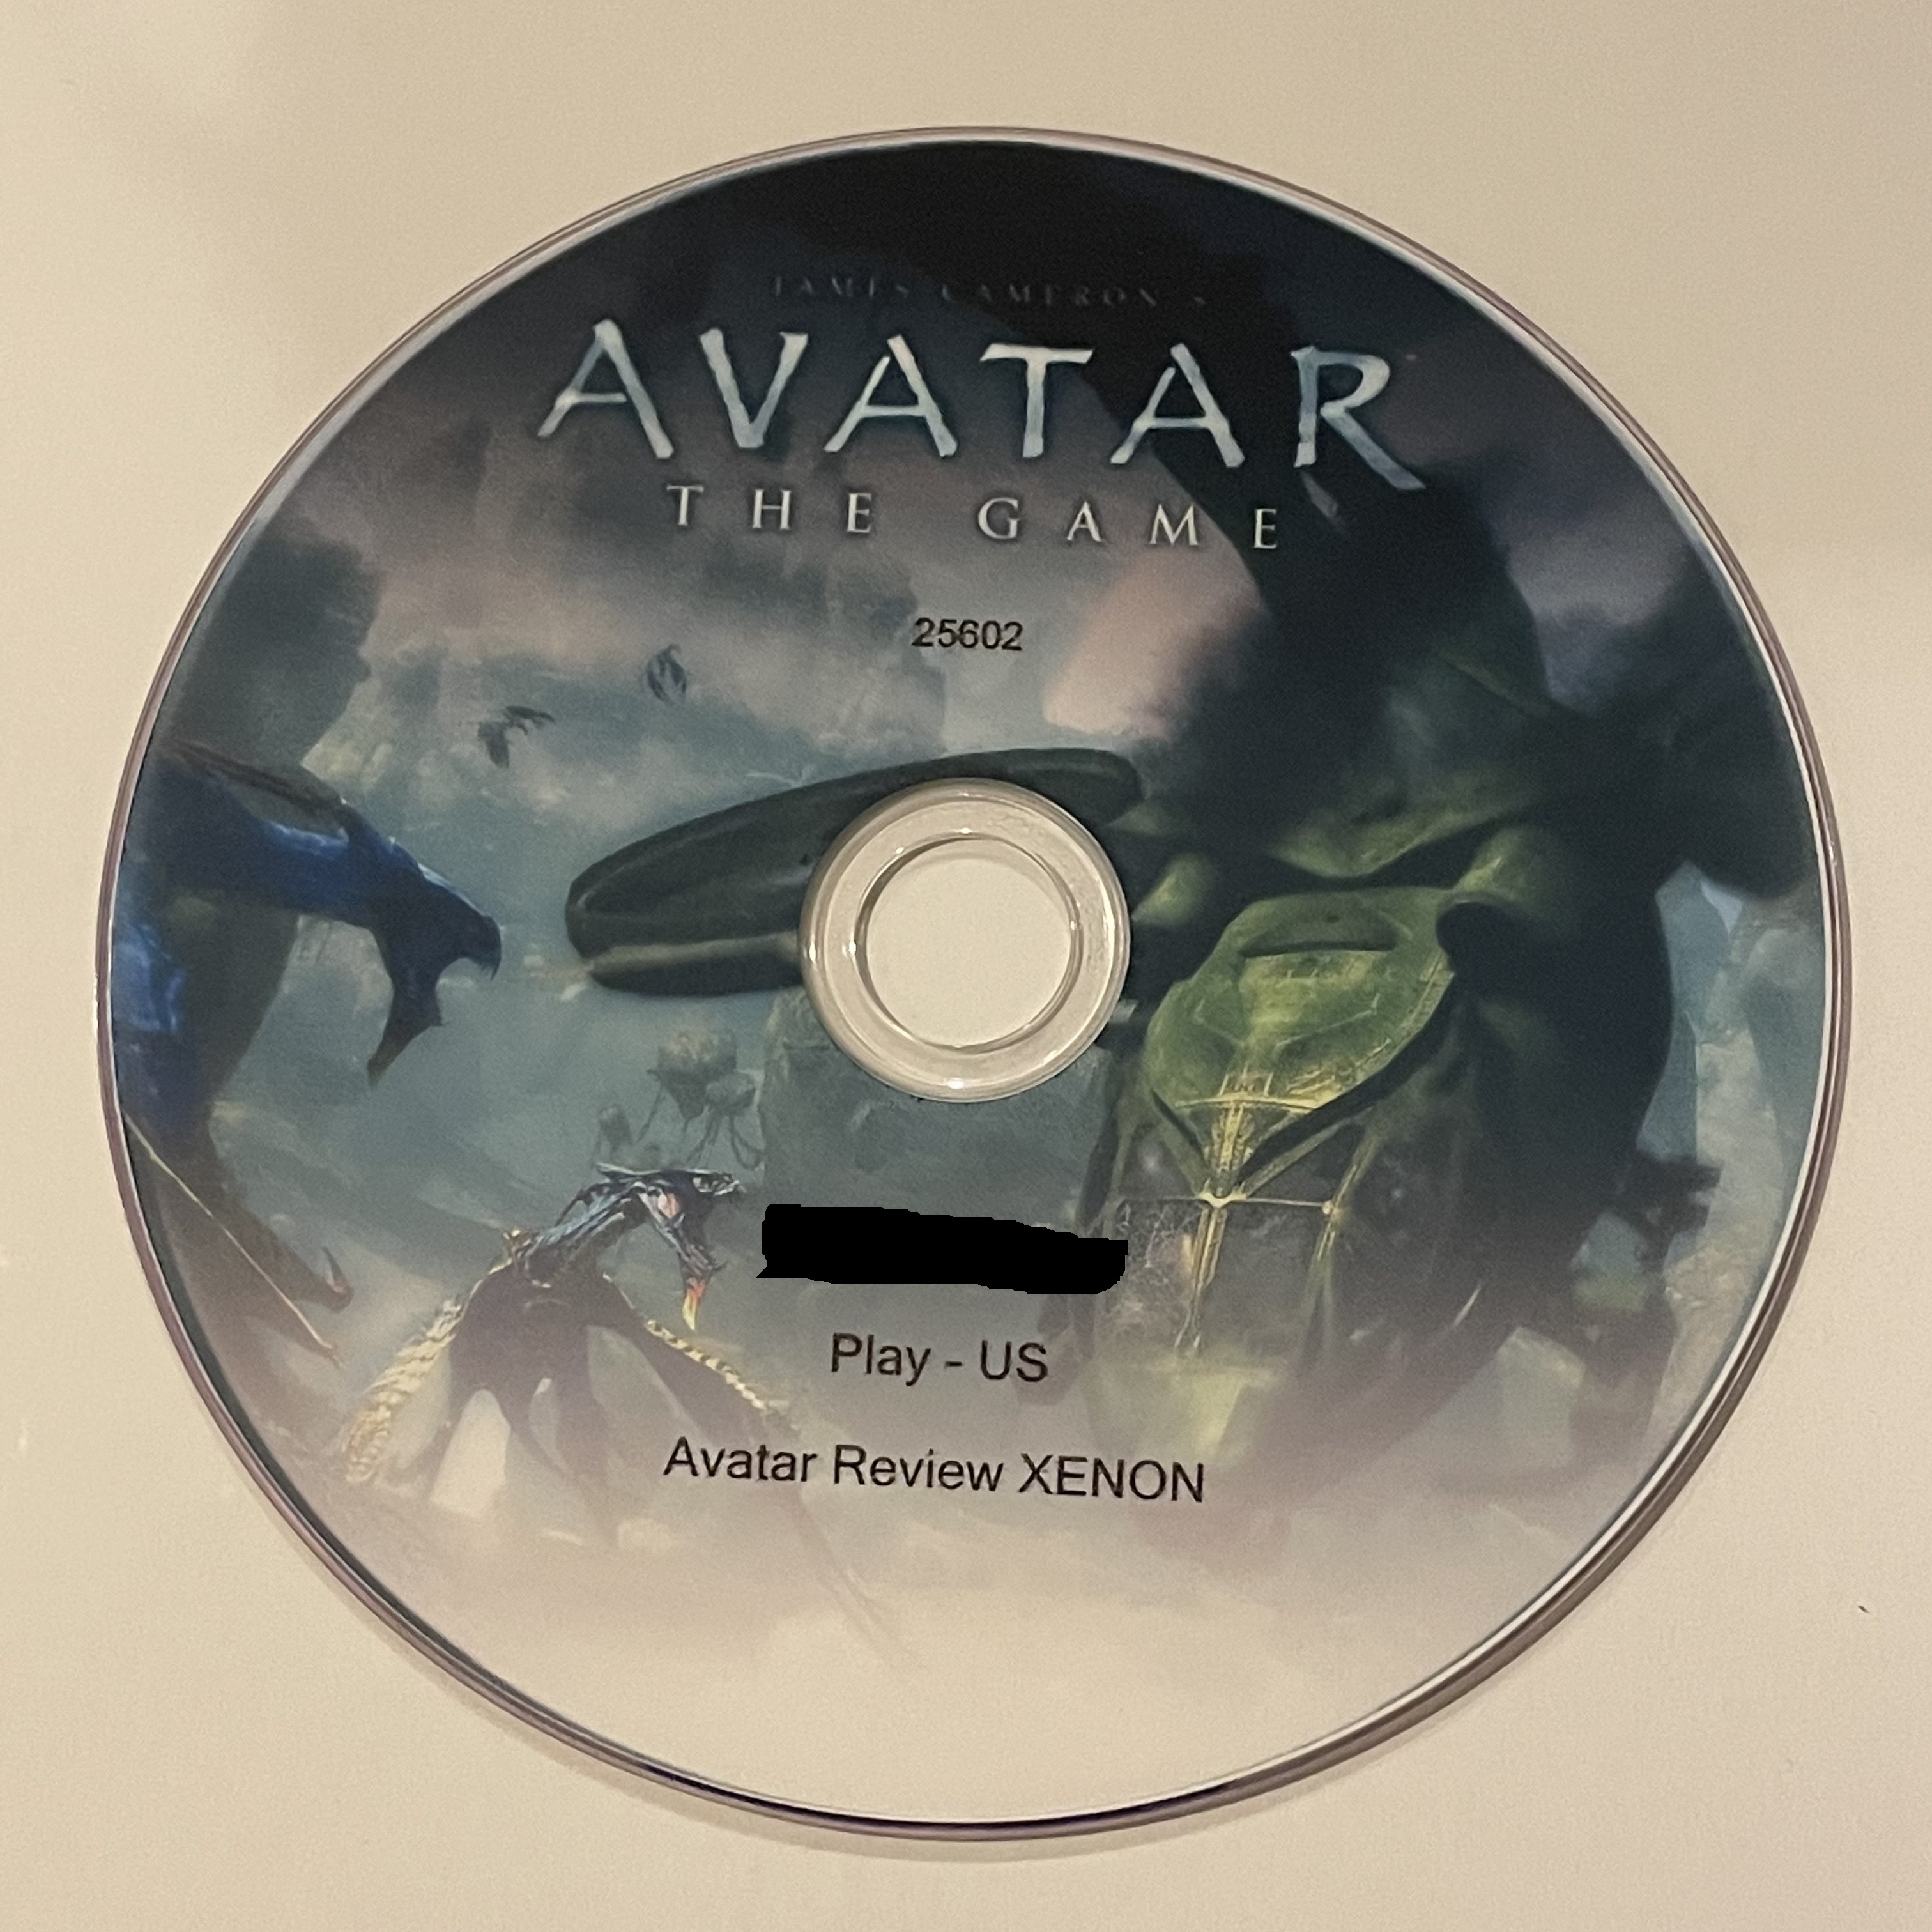 Download Game James Camerons Avatar The Game Fshare 23GB  Diễn đàn  sinh viên CNTT Quảng Ninh